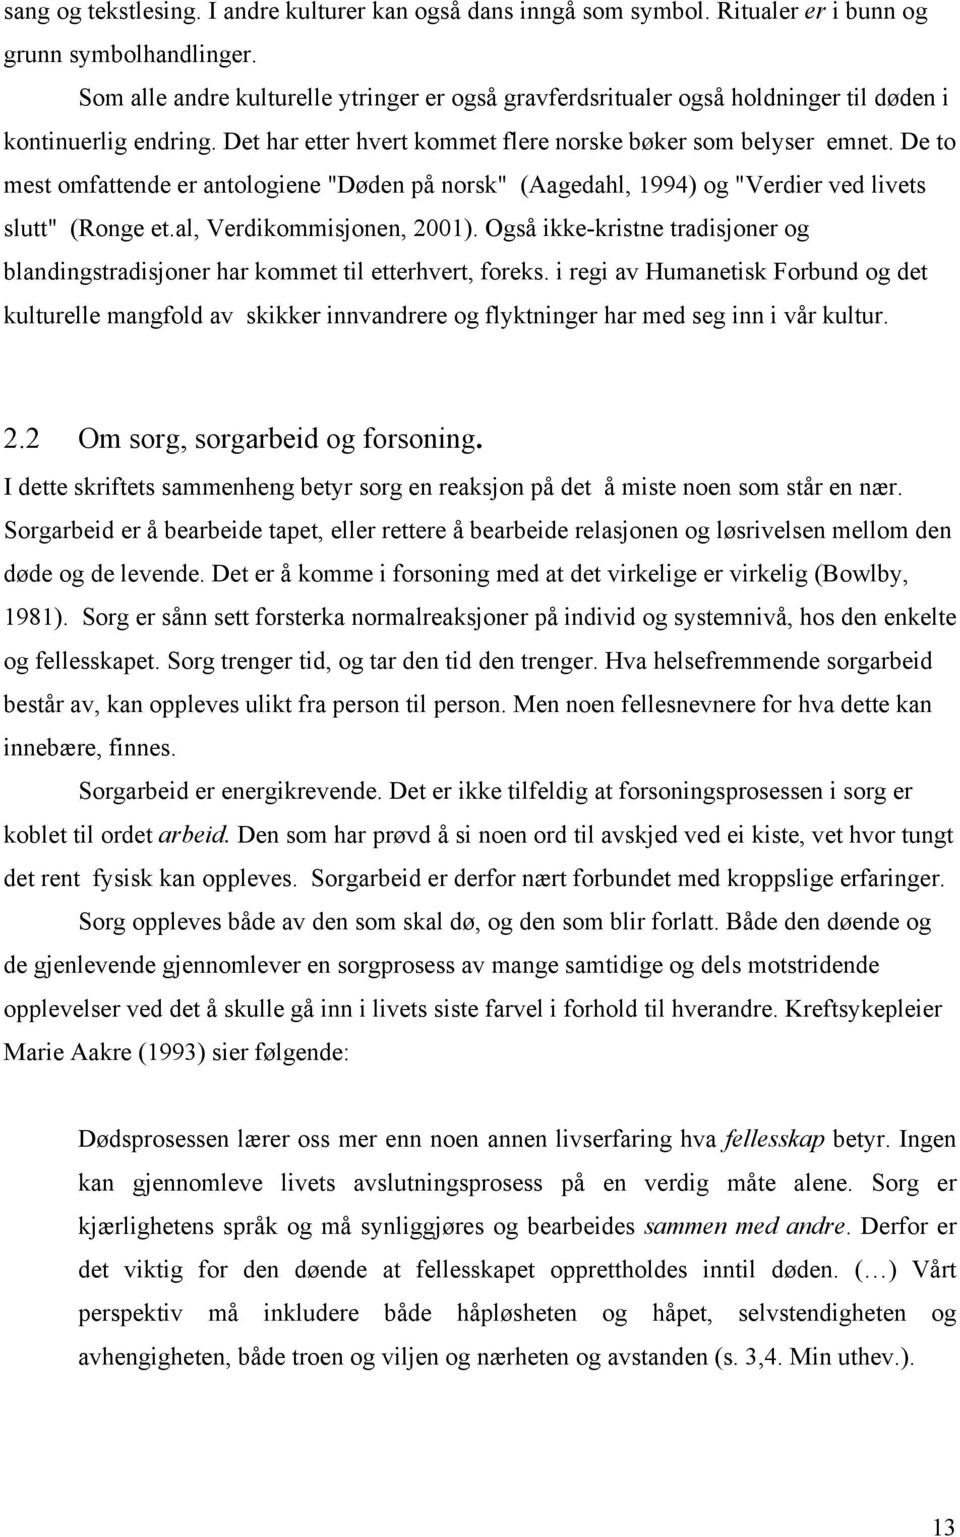 De to mest omfattende er antologiene "Døden på norsk" (Aagedahl, 1994) og "Verdier ved livets slutt" (Ronge et.al, Verdikommisjonen, 2001).